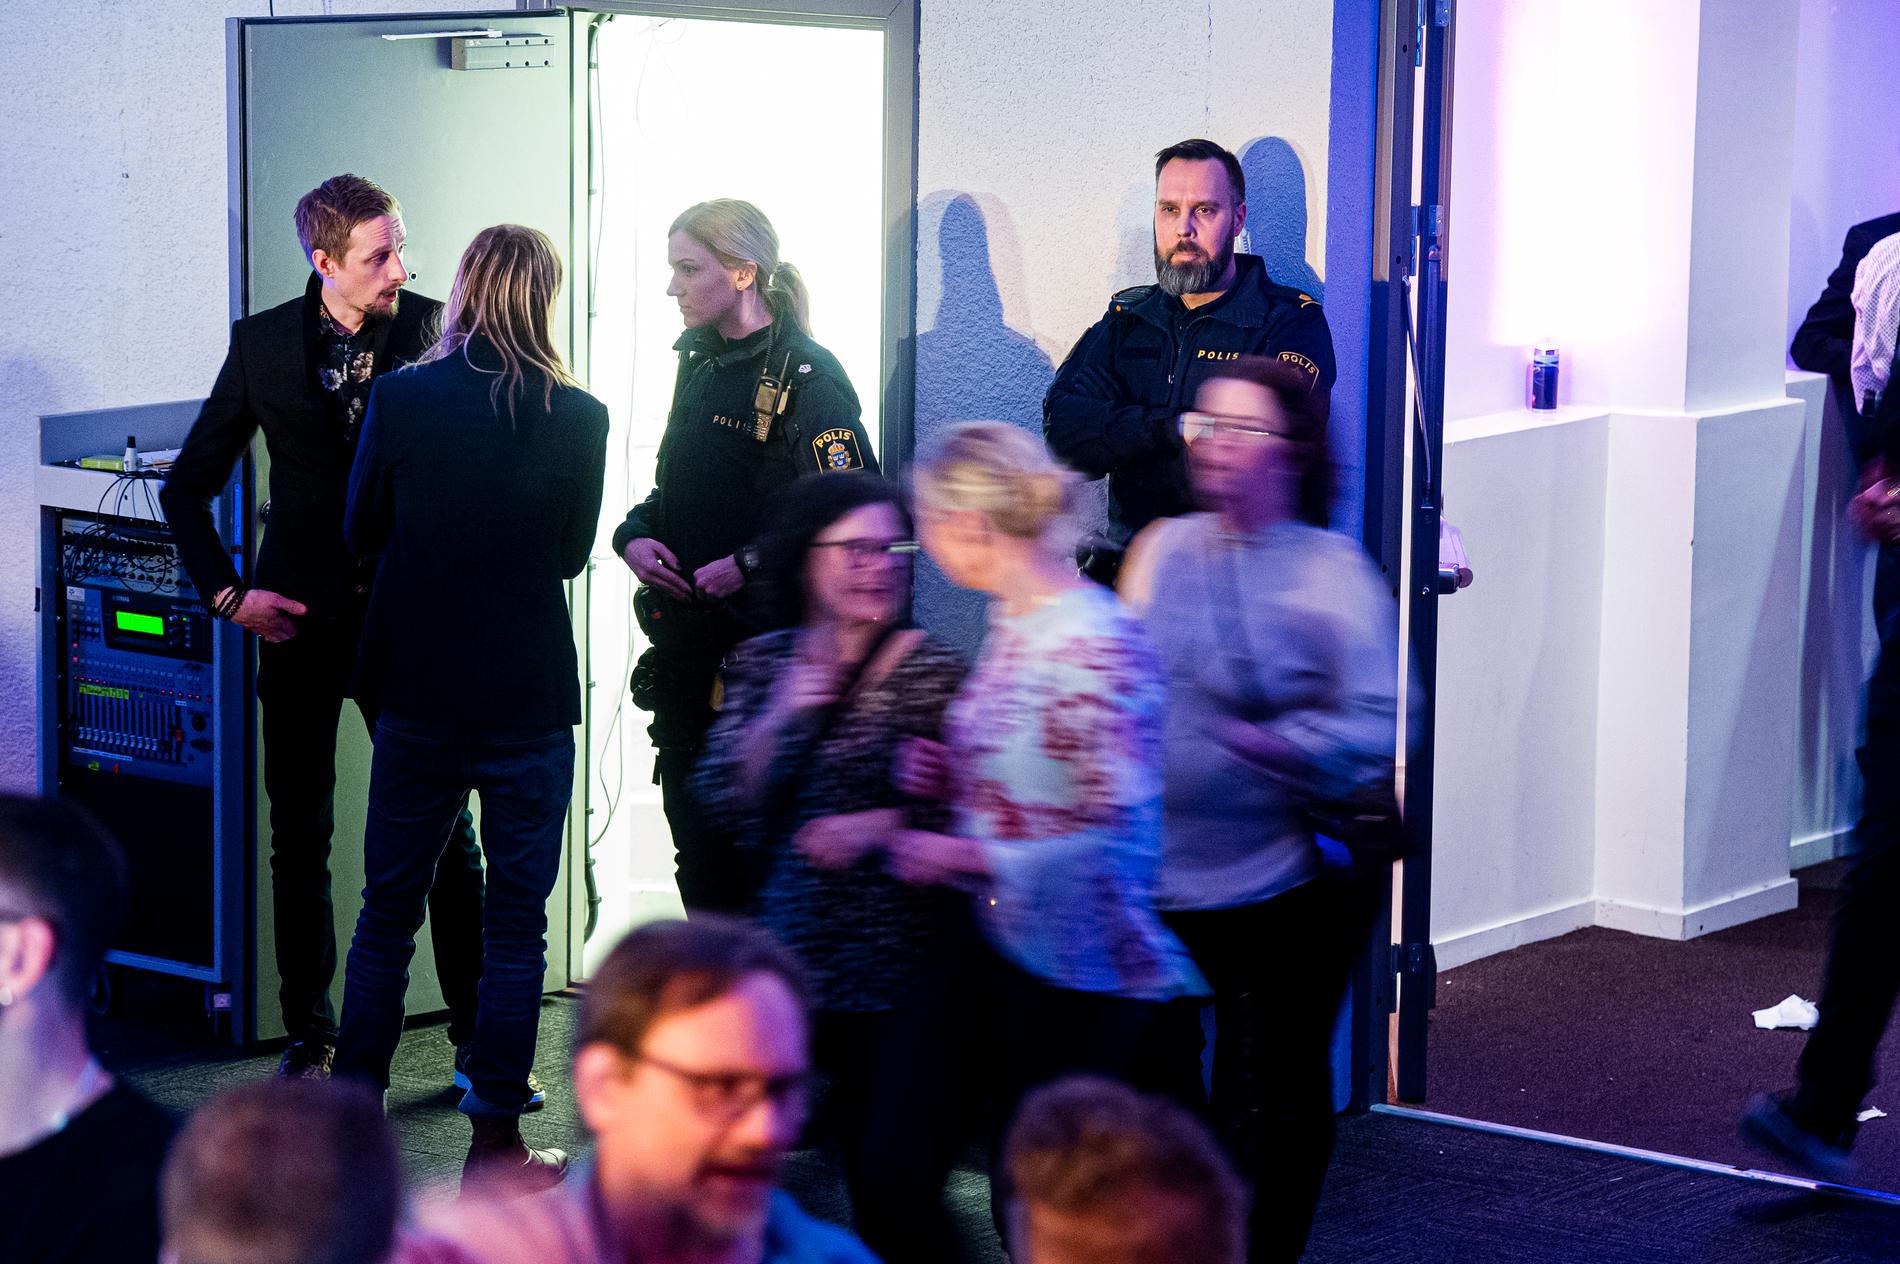 Polis på plats under efterfesten på Melodifestivalen 2020 i Eskilstuna efter att en nyckelperson i produktionen dagen före misstänks gjort sig skyldig till narkotikabrott.